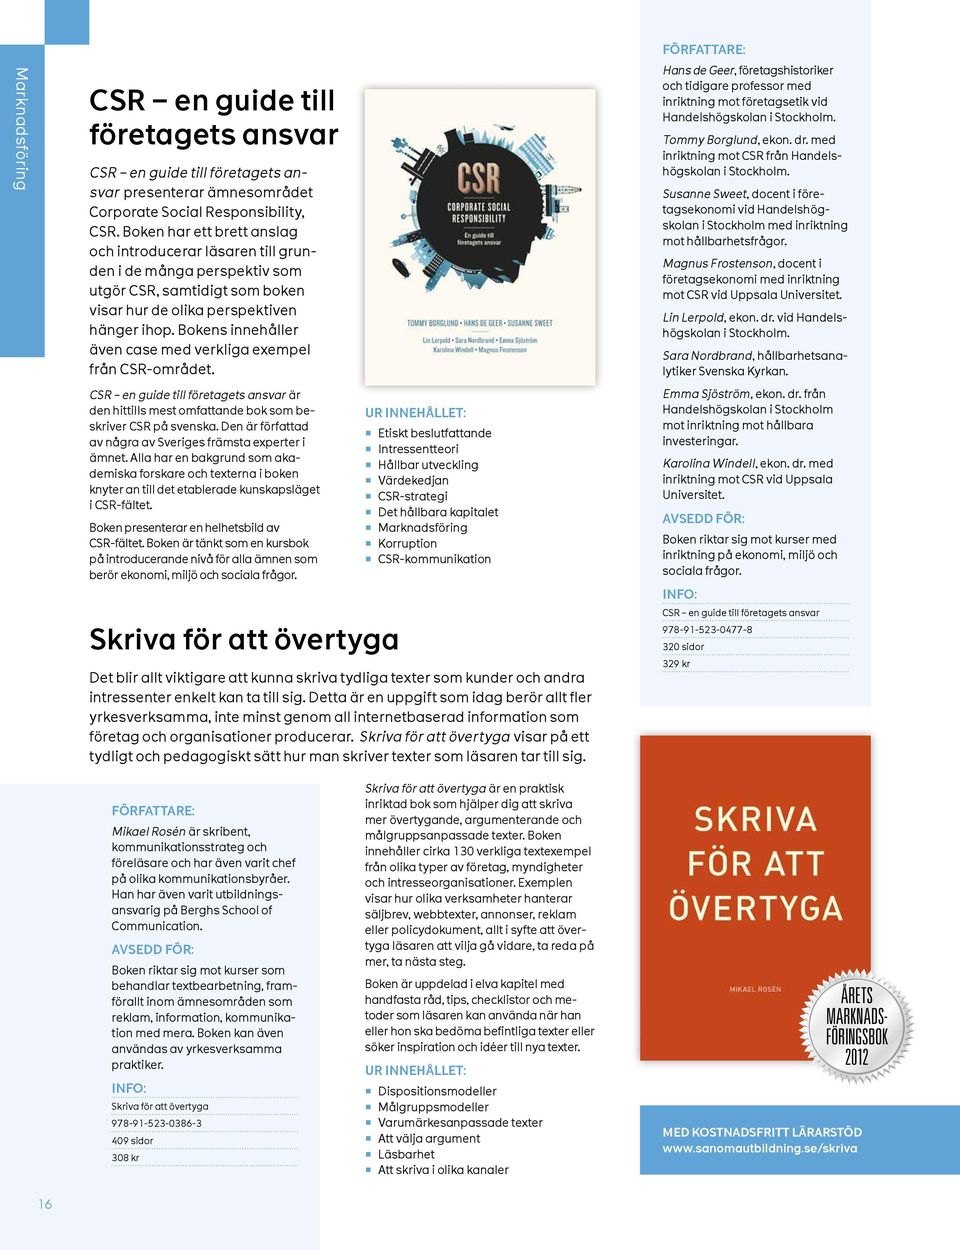 Bokens innehåller även case med verkliga exempel från CSR-området. CSR en guide till företagets ansvar är den hittills mest omfattande bok som beskriver CSR på svenska.